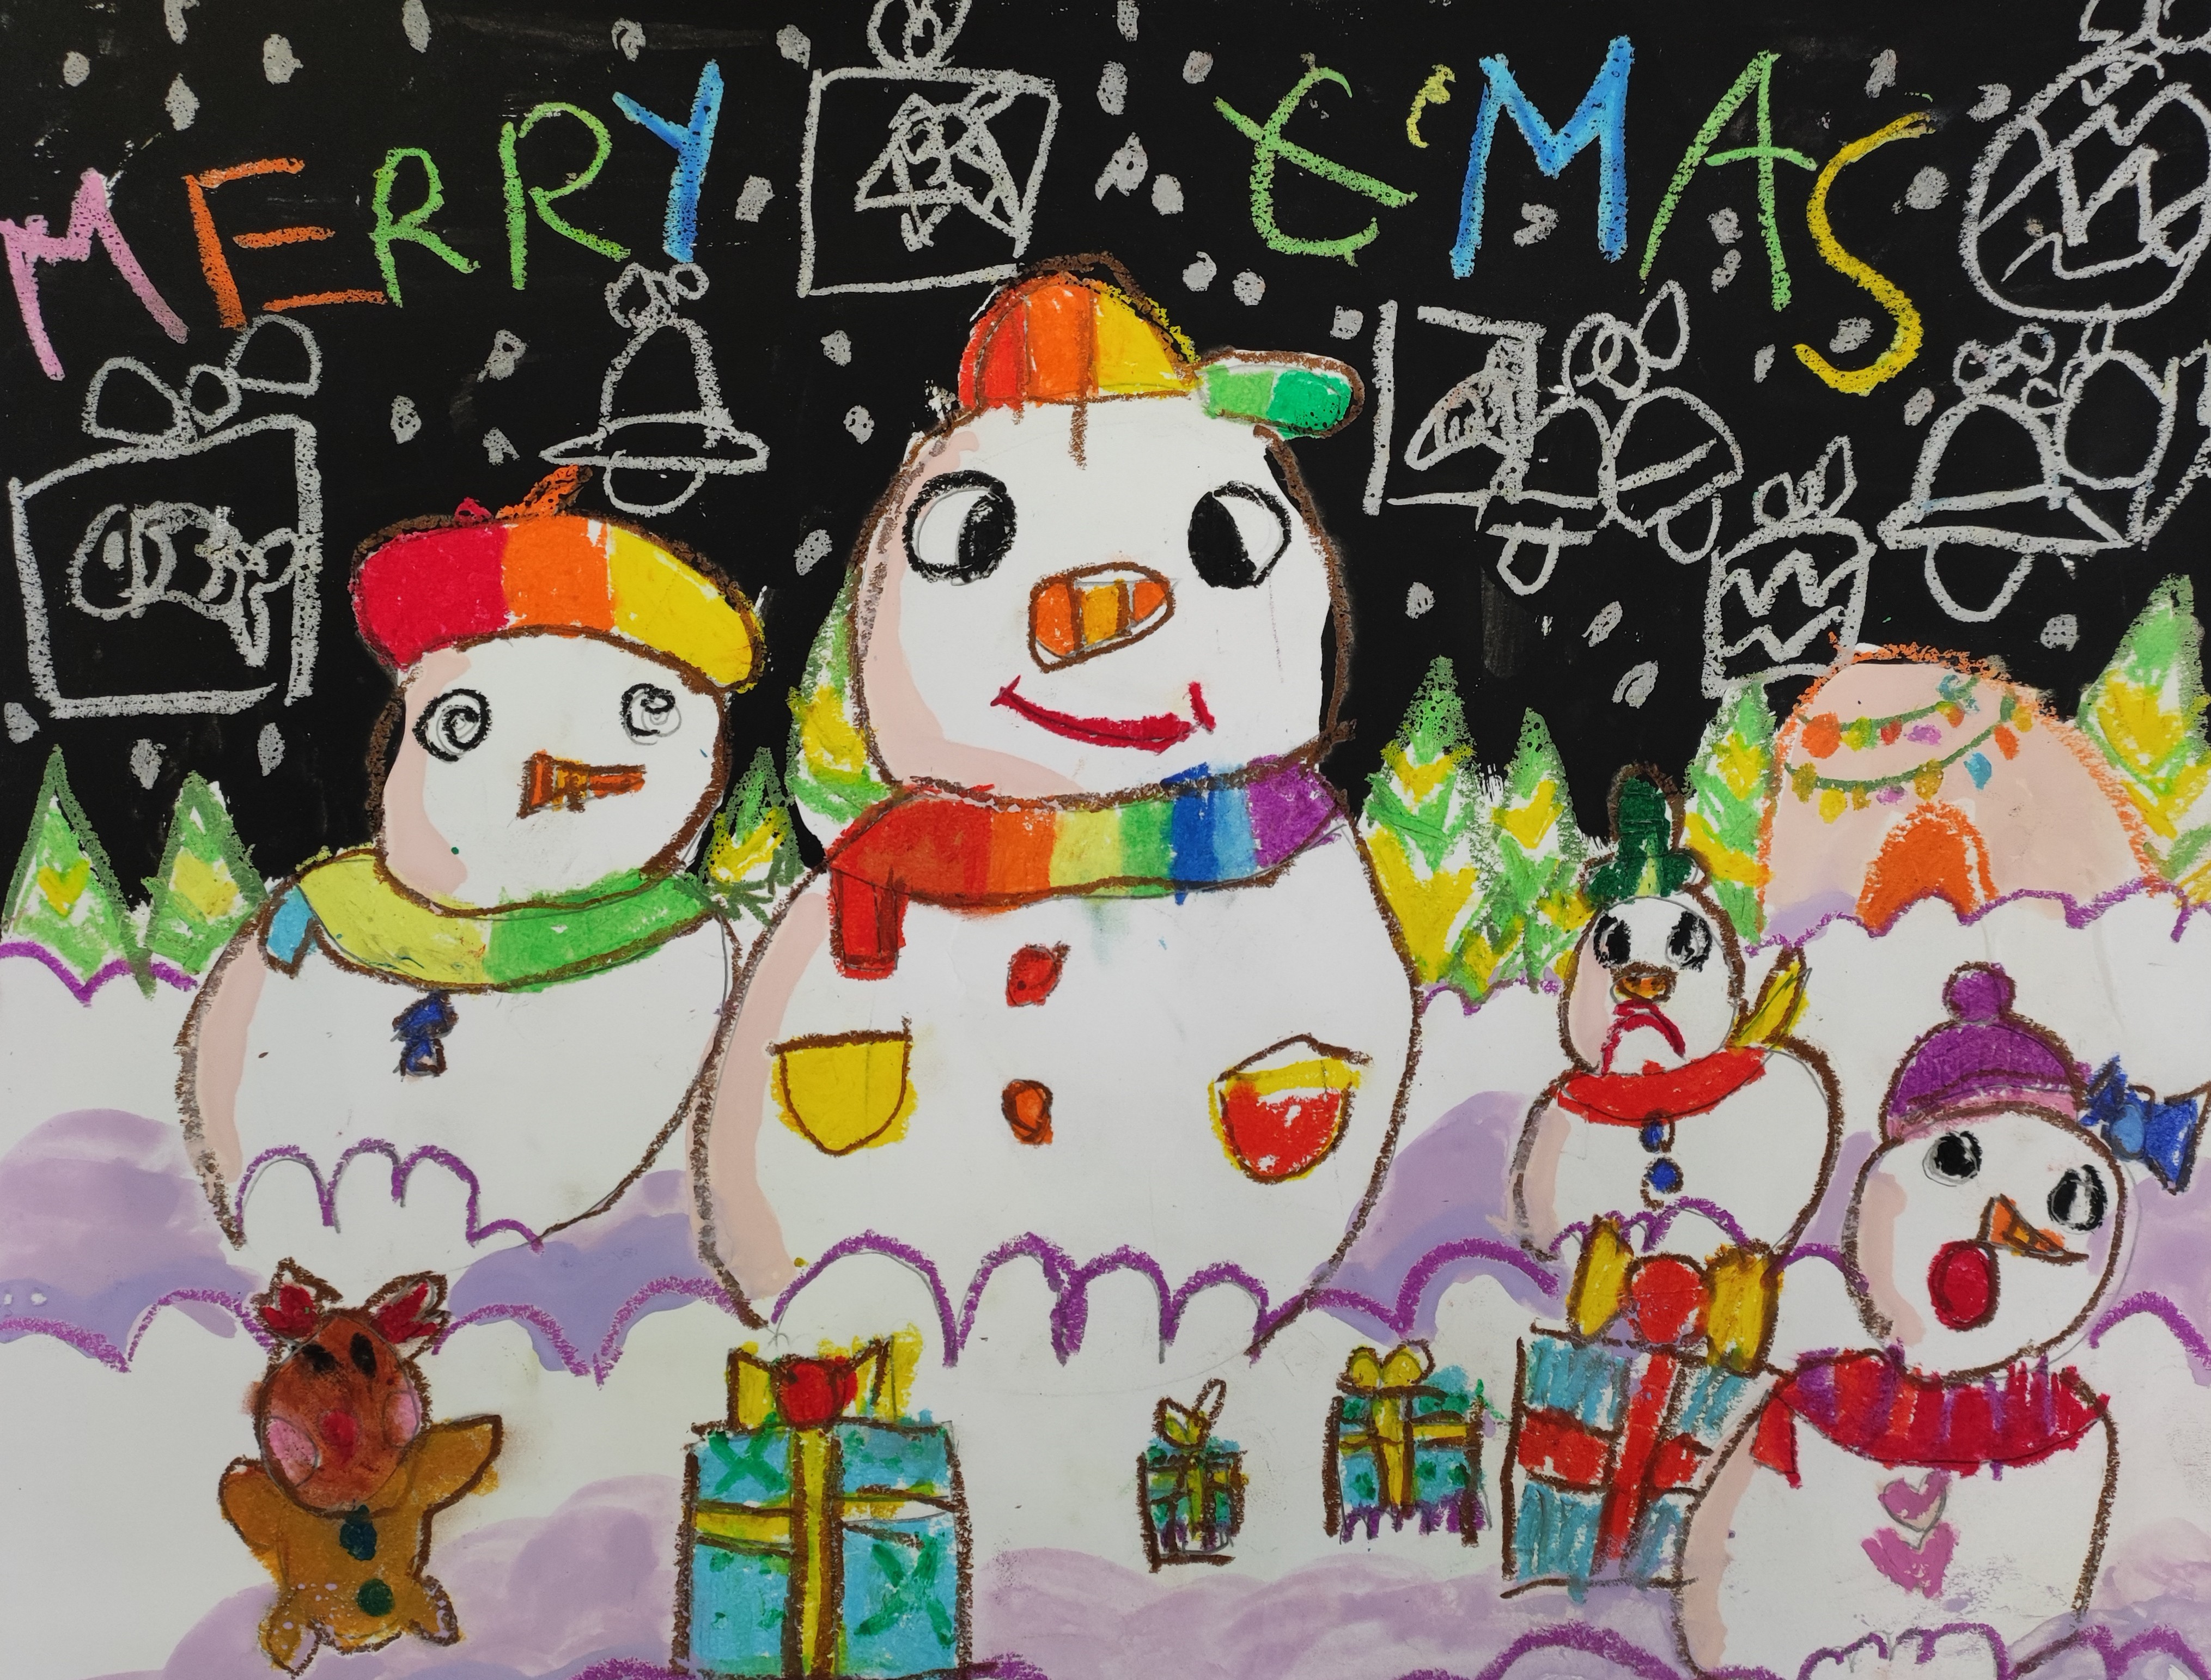 <div>繽紛聖誕-幼稚園高級組(K3)-亞軍-王千又</div>
<div>很可愛的雪人聖誕派對！雪人造型可愛，配色繽紛，雪地用色處理得不錯！</div>
<div>夜空中還有不同的聖誕元素，讓畫面更豐富。</div>